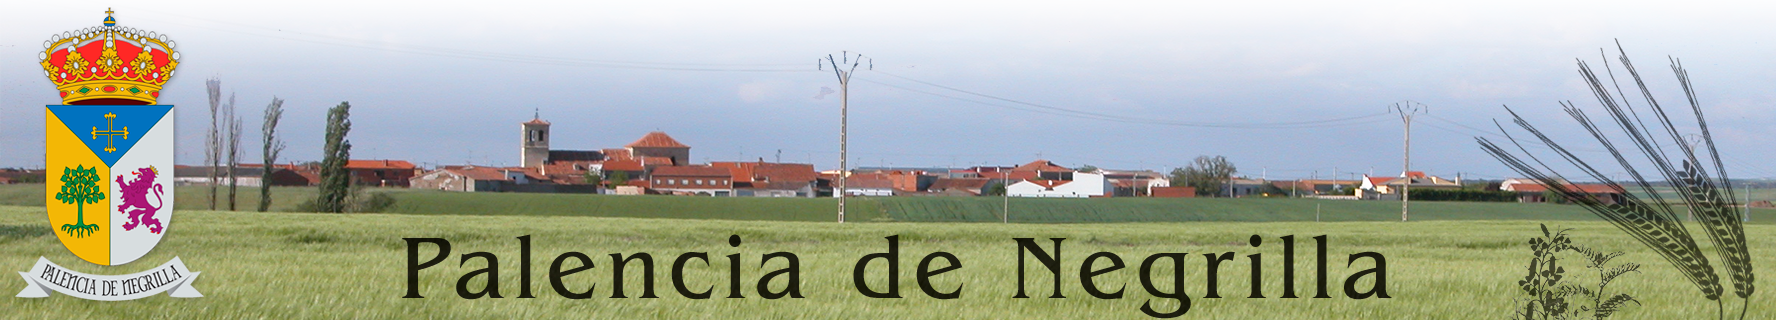 Ayuntamiento de Palencia de Negrilla. Salamanca.